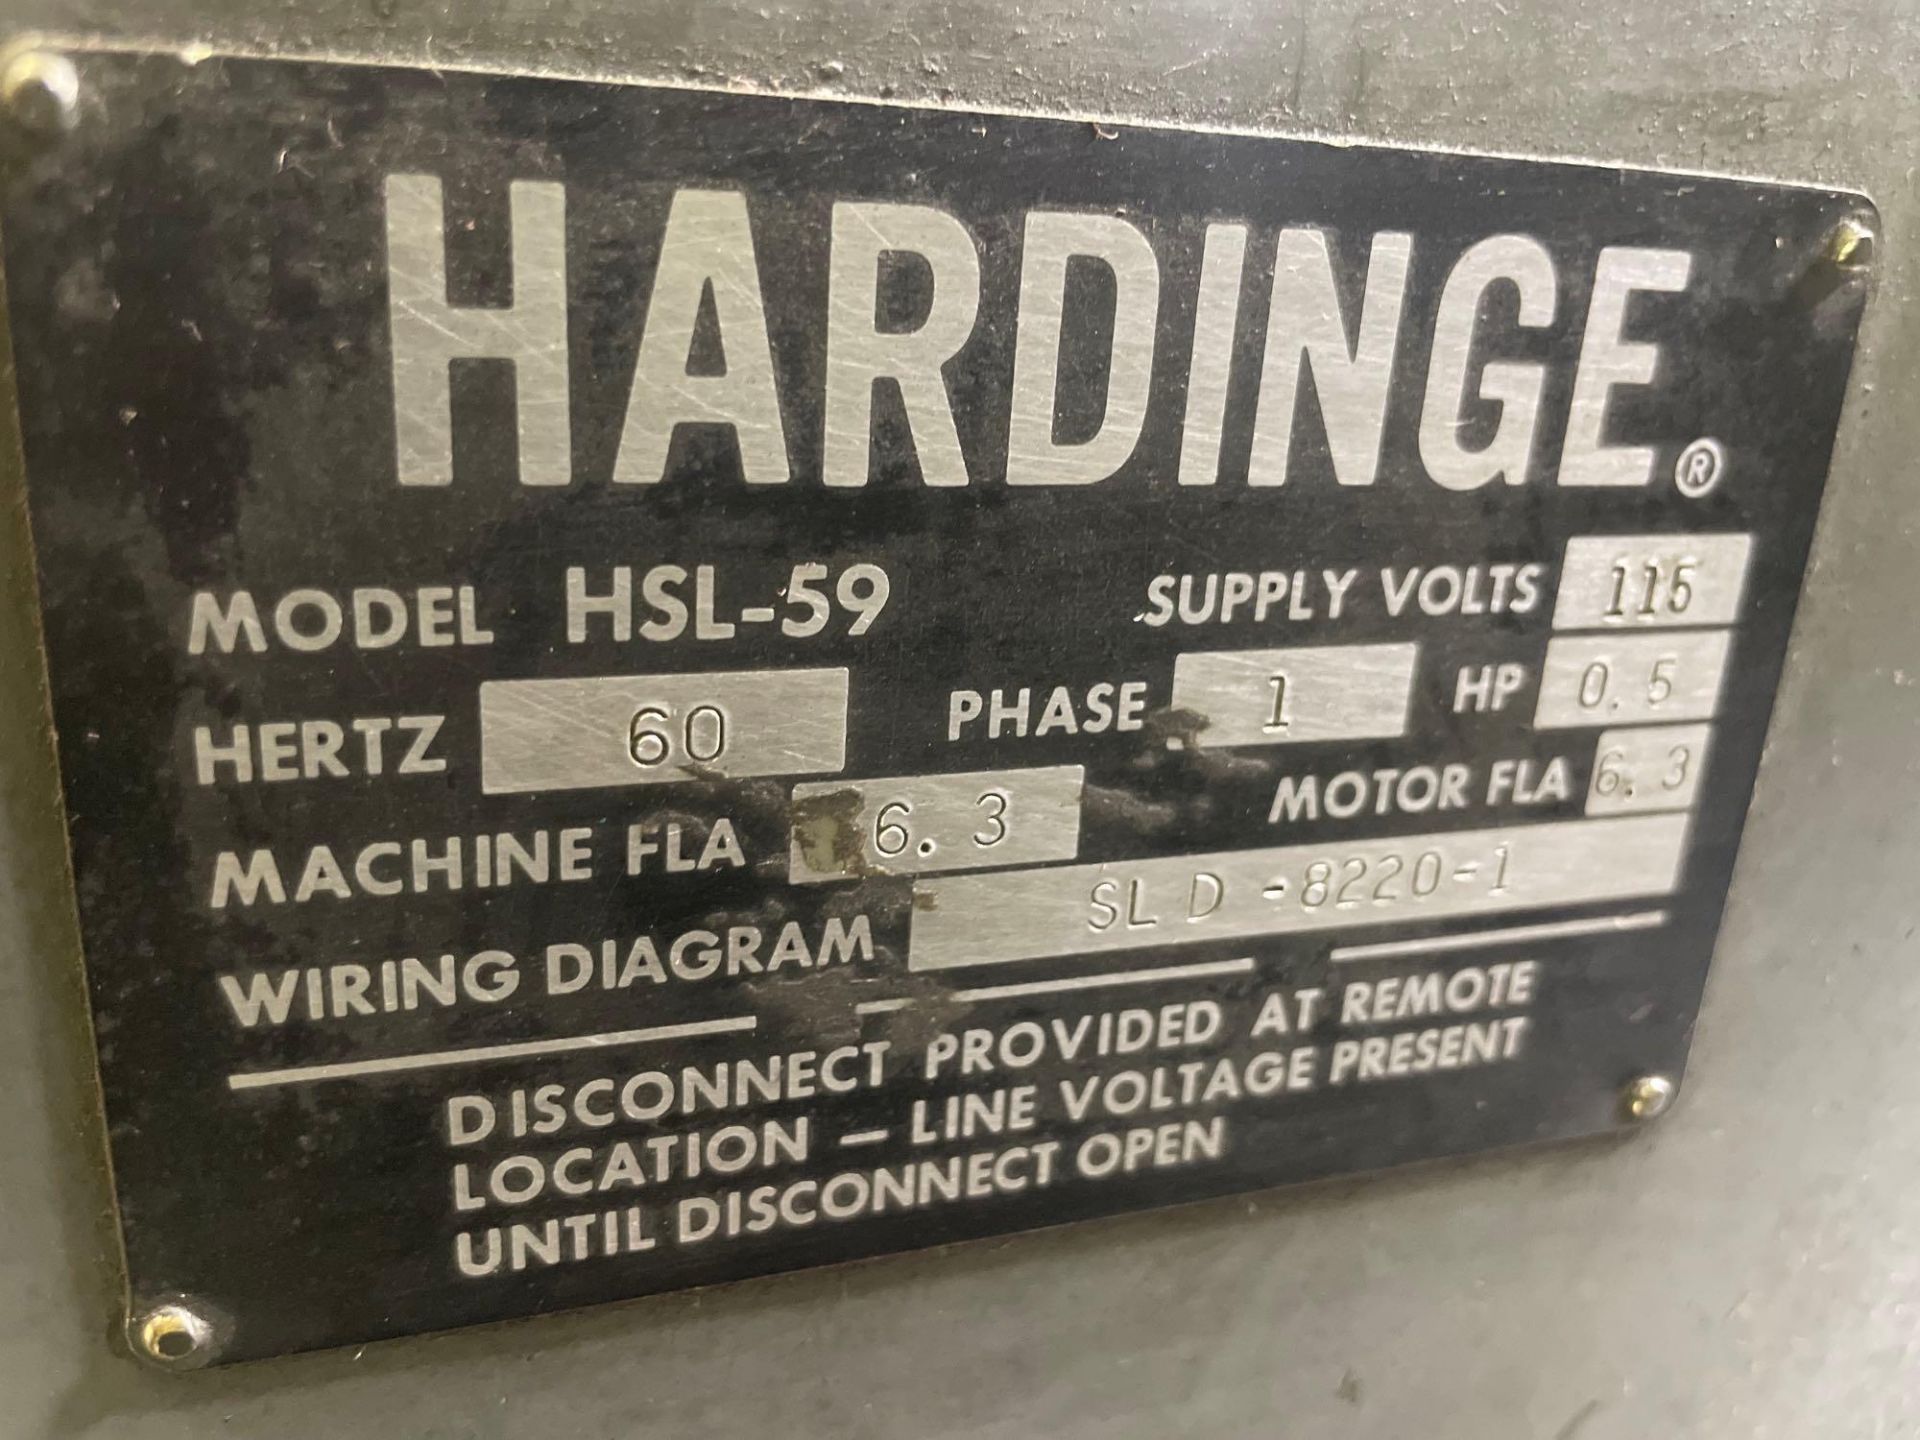 Hardinge HSL l- 59 Speed Lathe, s/n SL D-8220-1 - Image 6 of 6